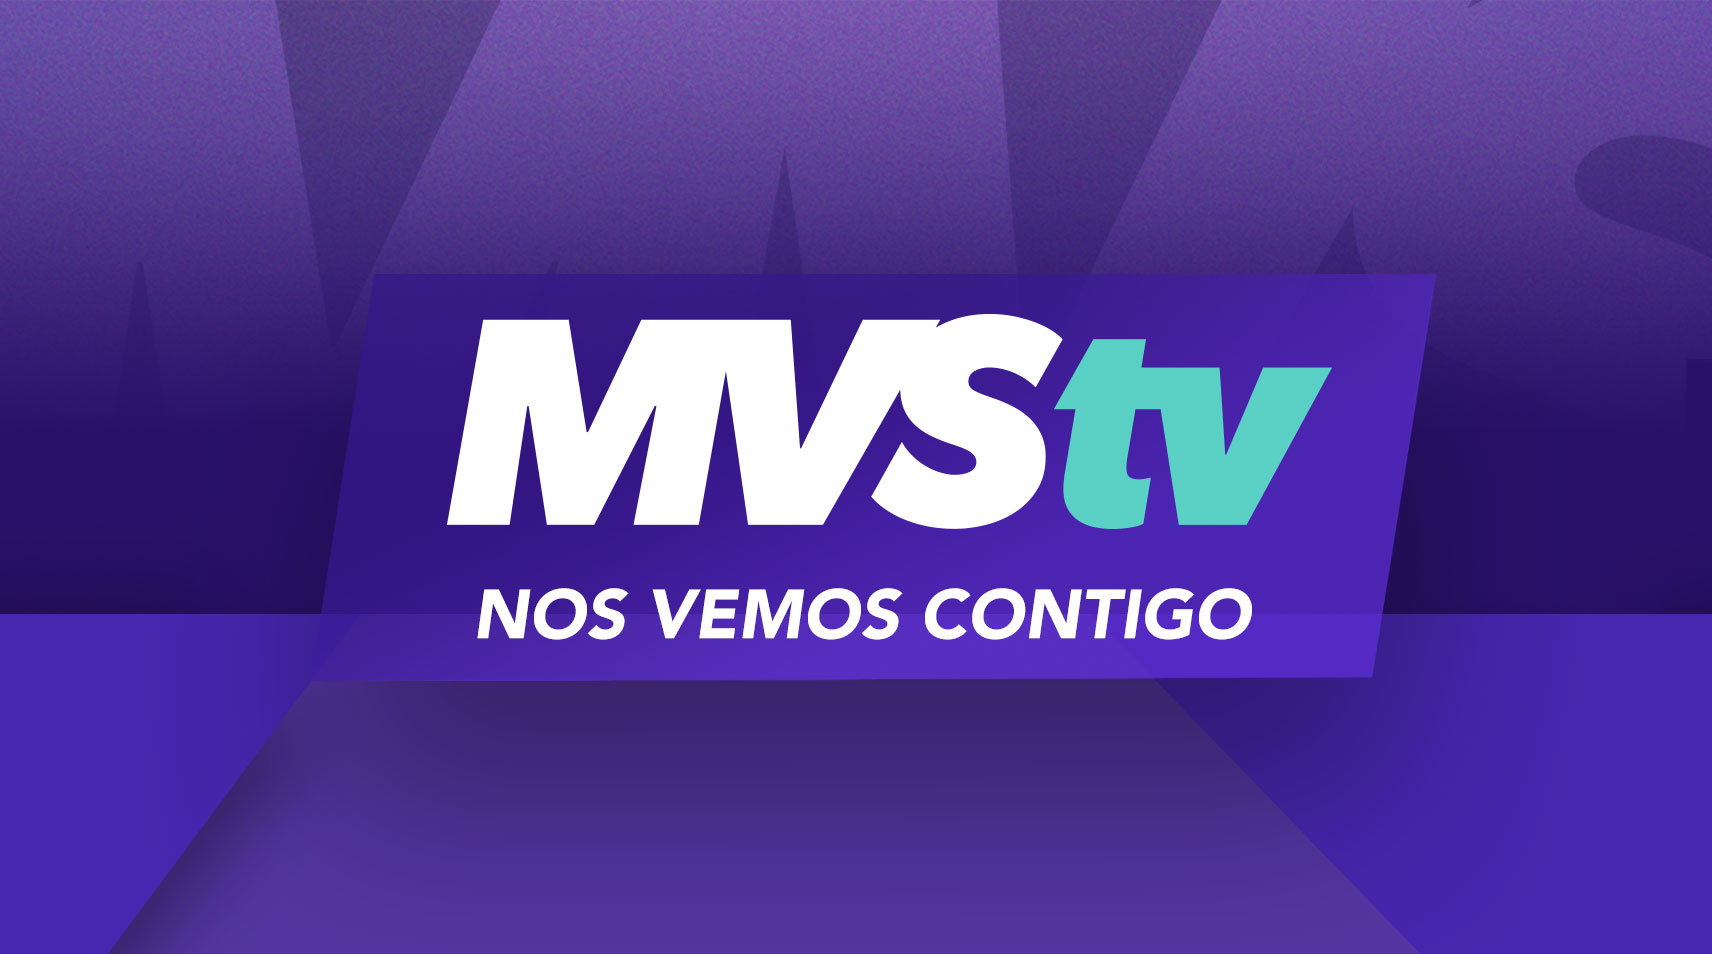 (c) Mvstv.com